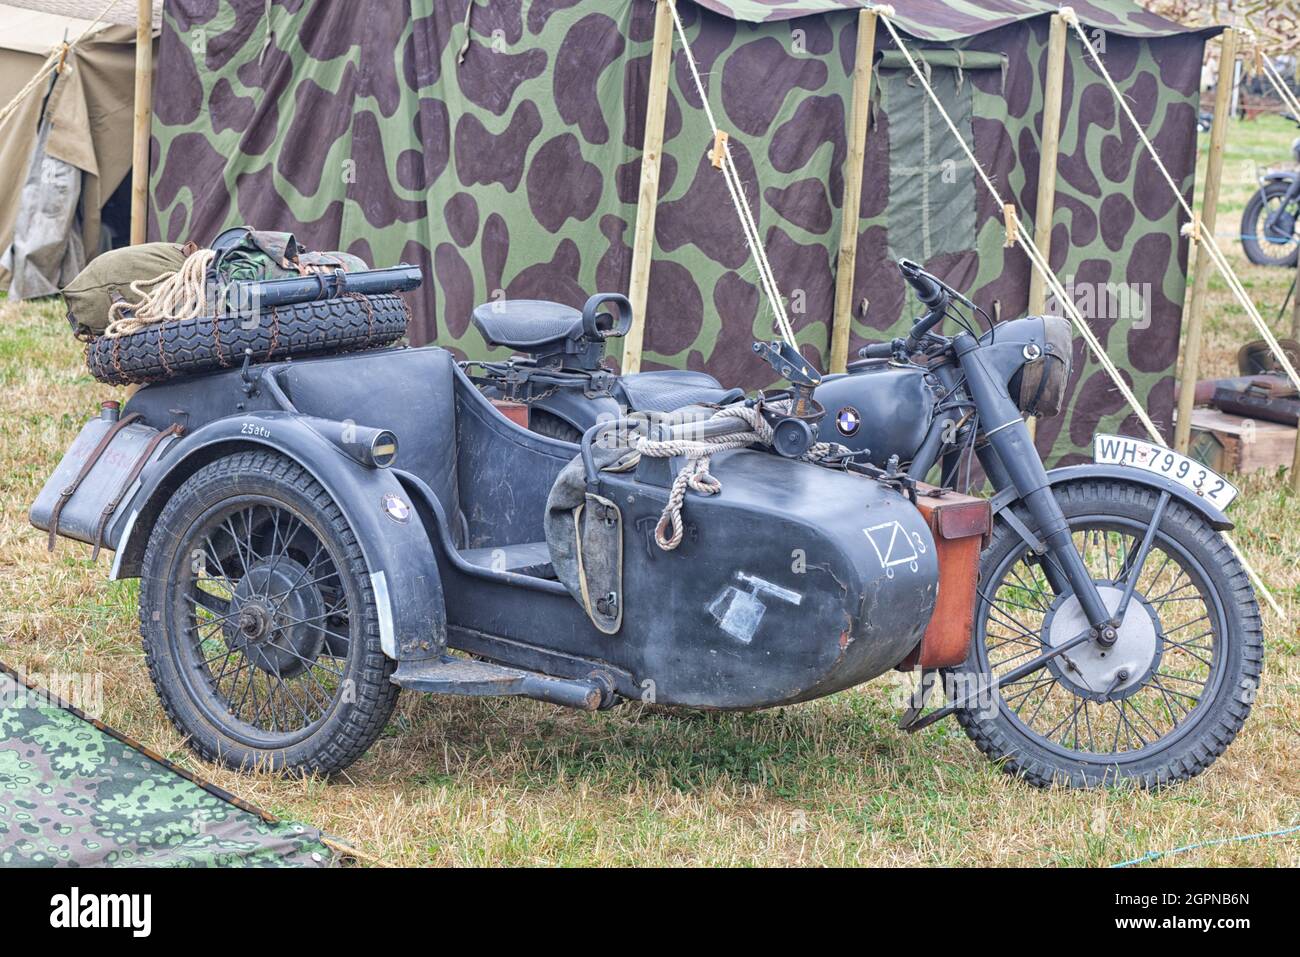 DEUTSCHER WWII BMW R12 MOTORRAD MIT SEITENWAGEN Stockfotografie - Alamy